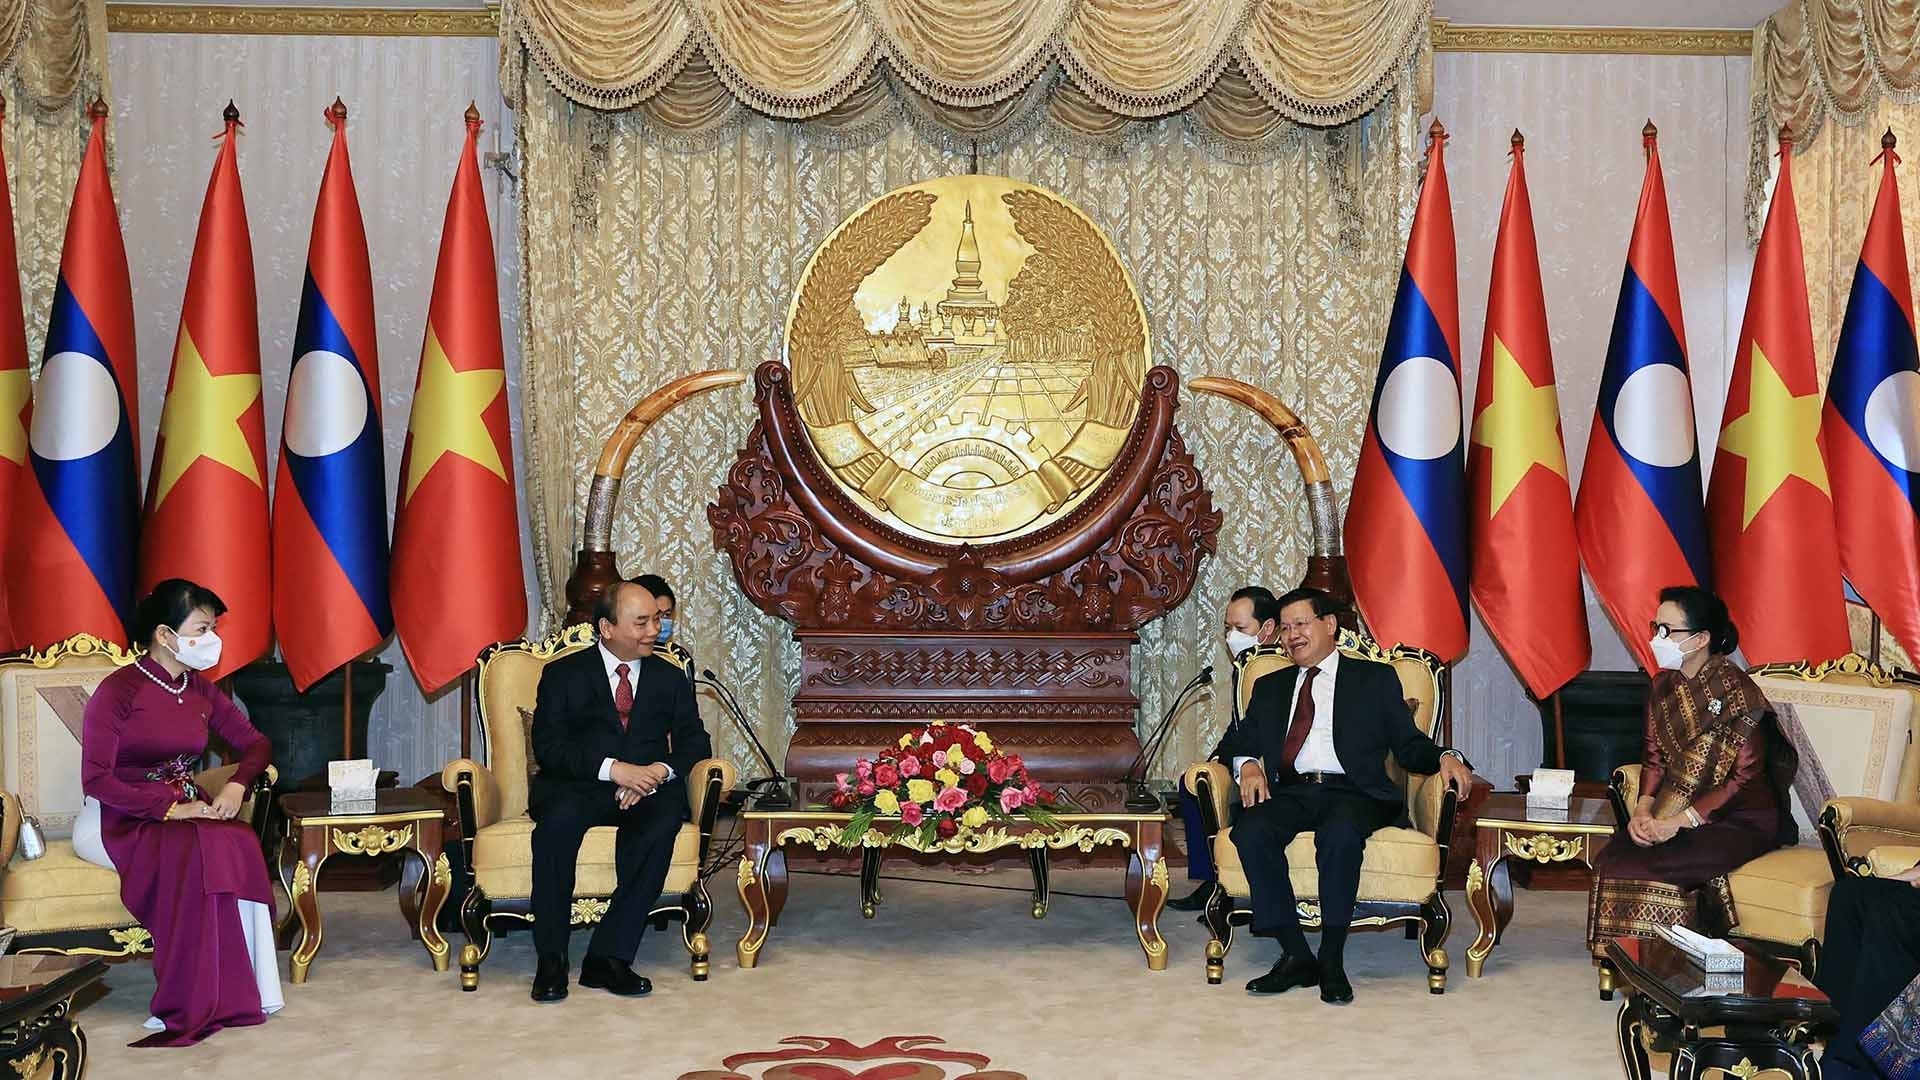 应老挝人民革命党中央委员会总书记、老挝人民民主共和国主席通伦•西苏里的邀请，越共中央政治局委员、越南国家主席阮春福携夫人同越南党和国家高级代表团于2021年8月9日对老挝进行正式友好访问。